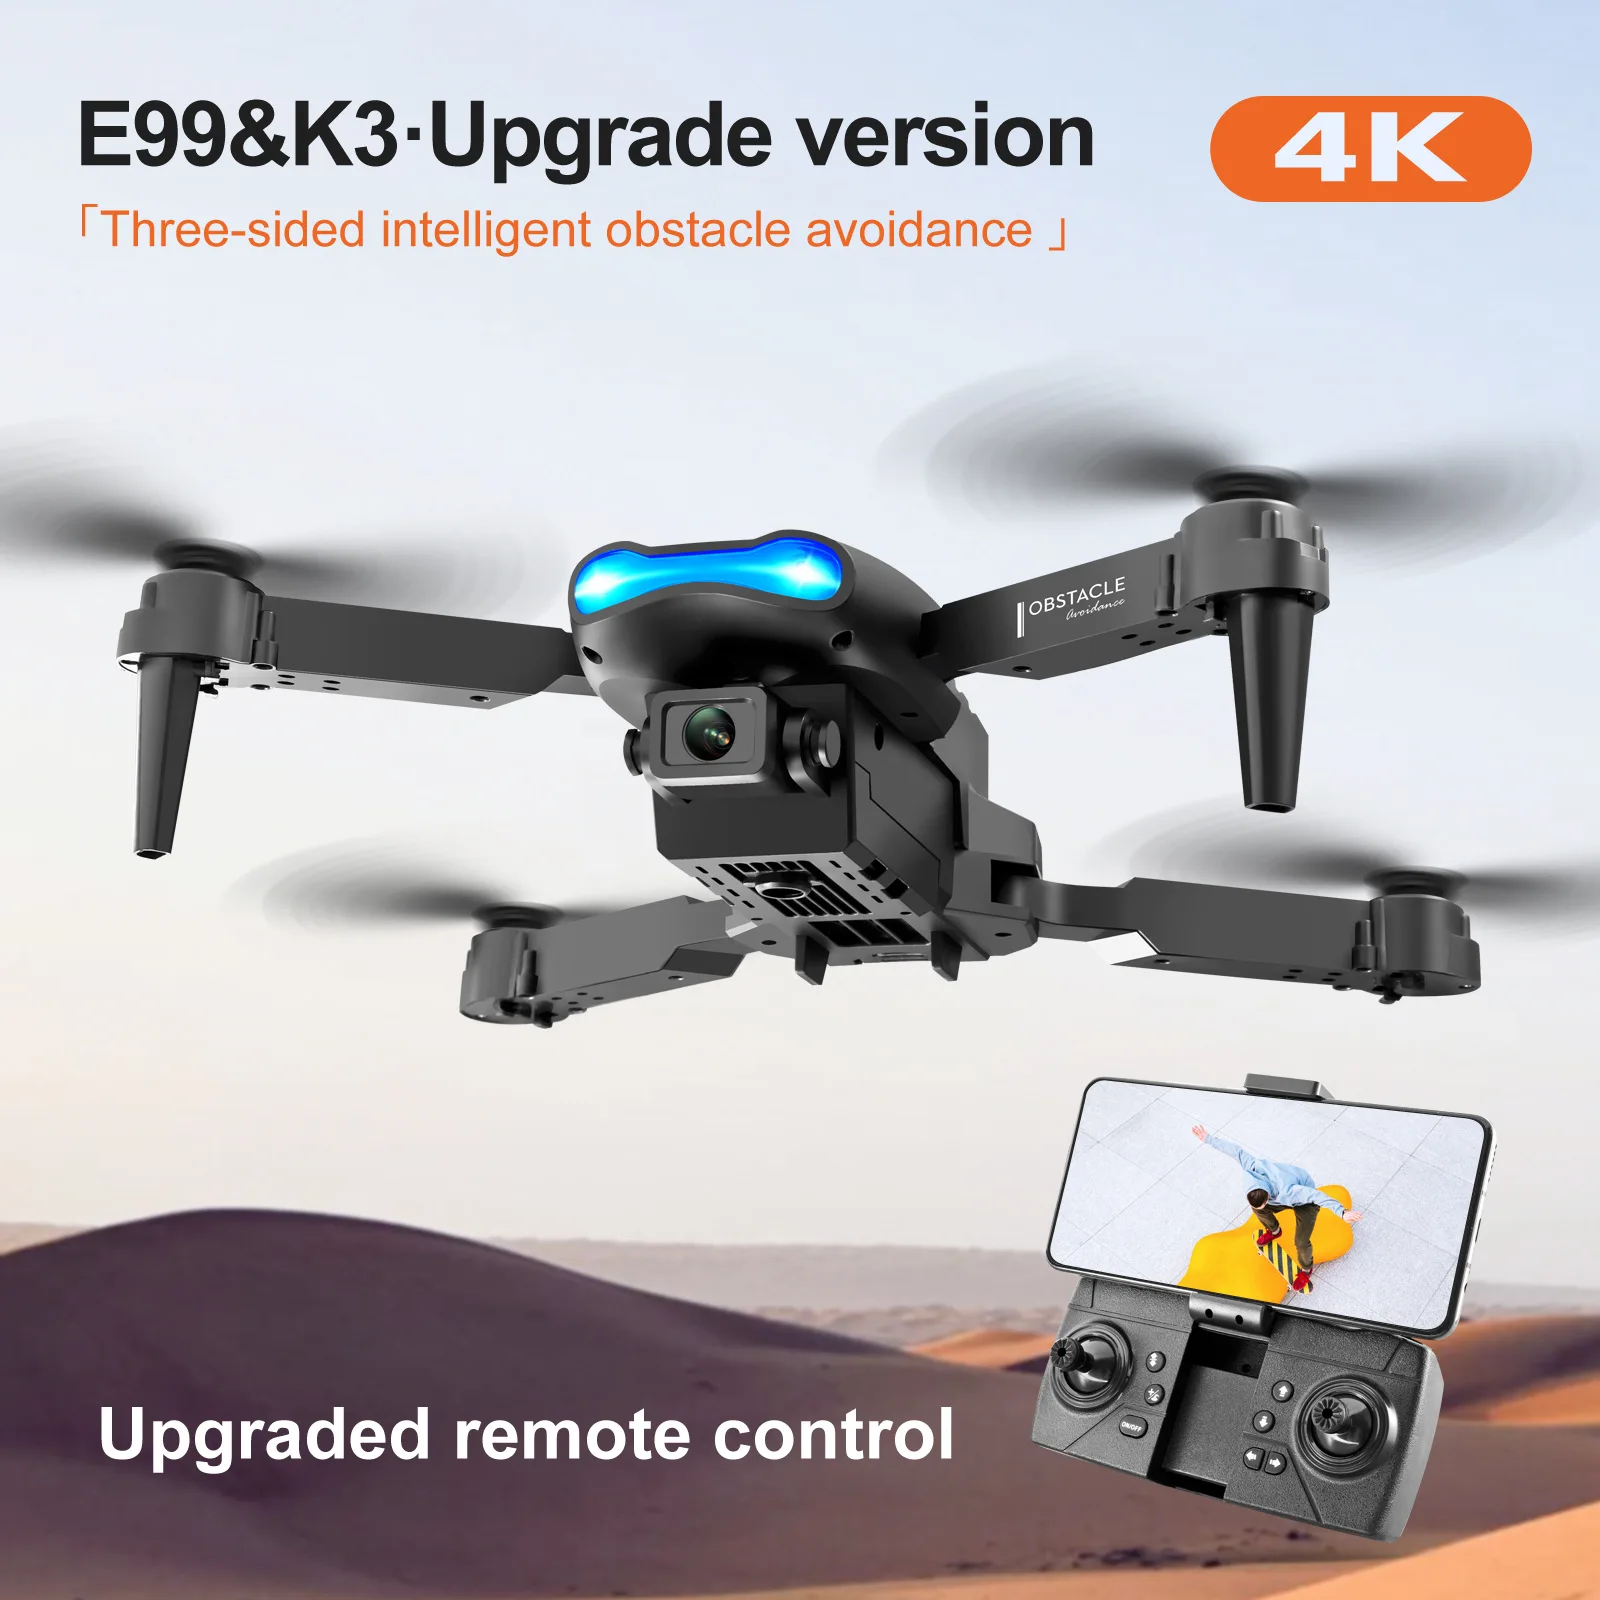 

E99 & K3 Дрон с камерой 4k двойная камера дроны мини Дрон складной Дрон с дистанционным управлением Квадрокоптер